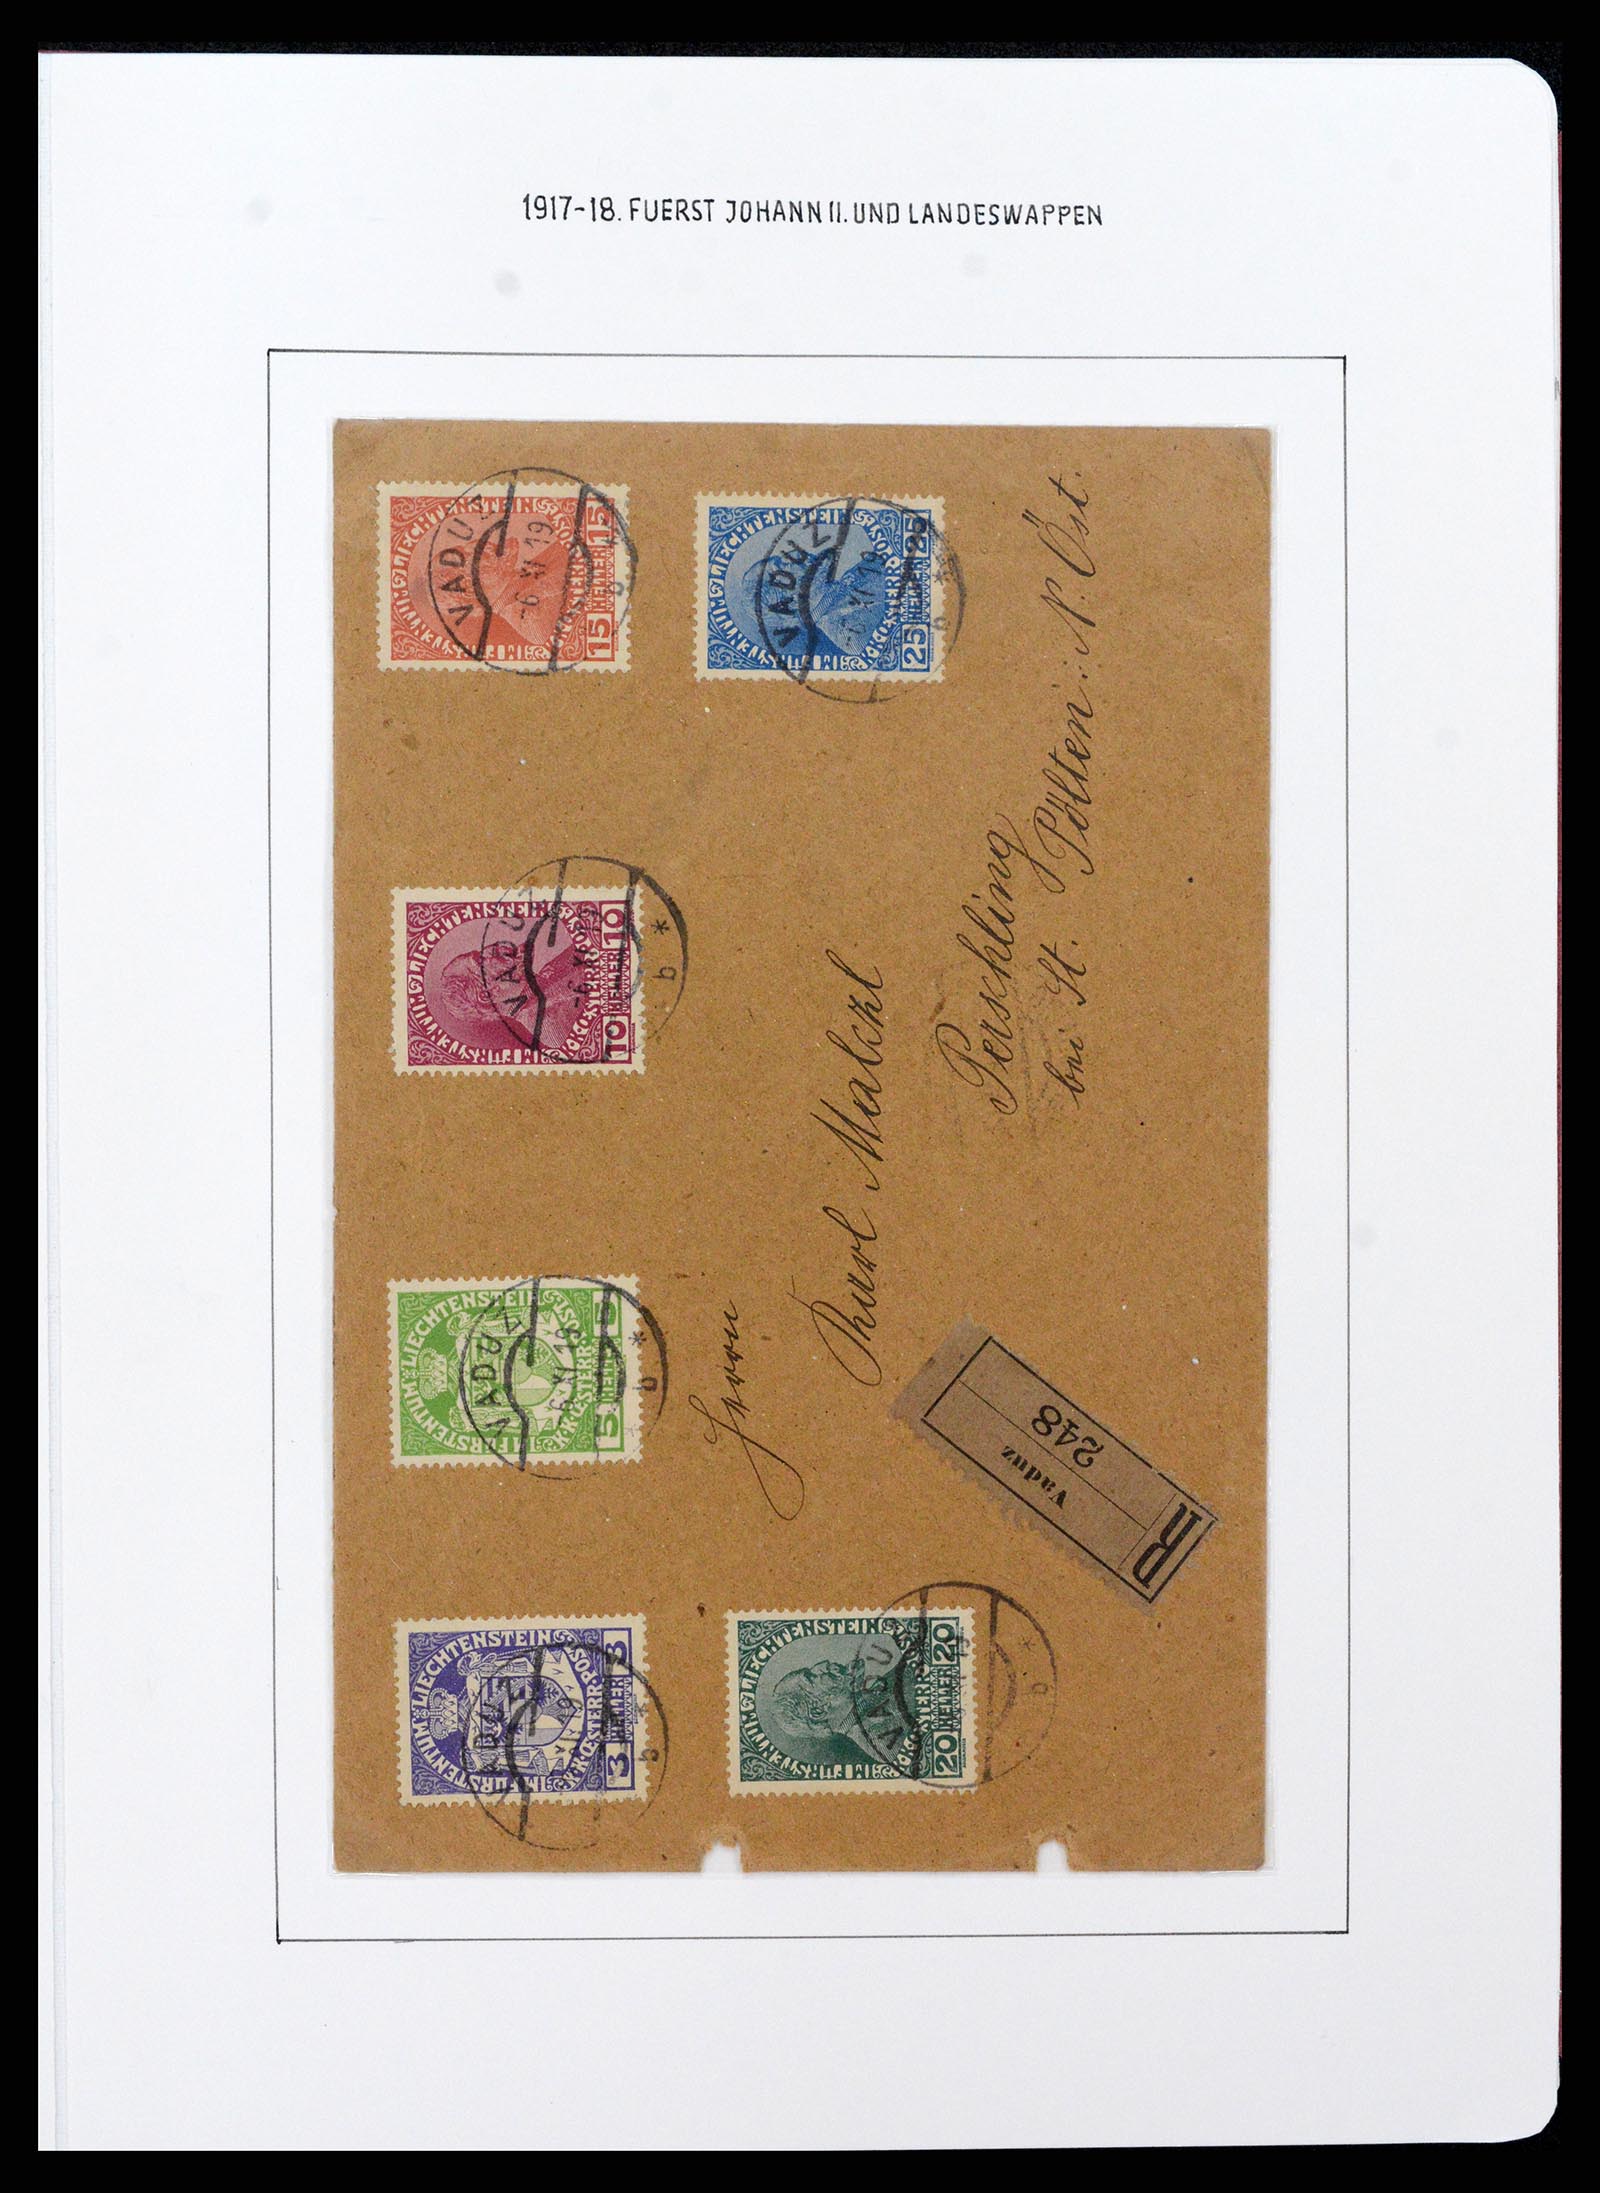 37150 0029 - Stamp collection 37150 Liechtenstein supercollection 1912-1962.